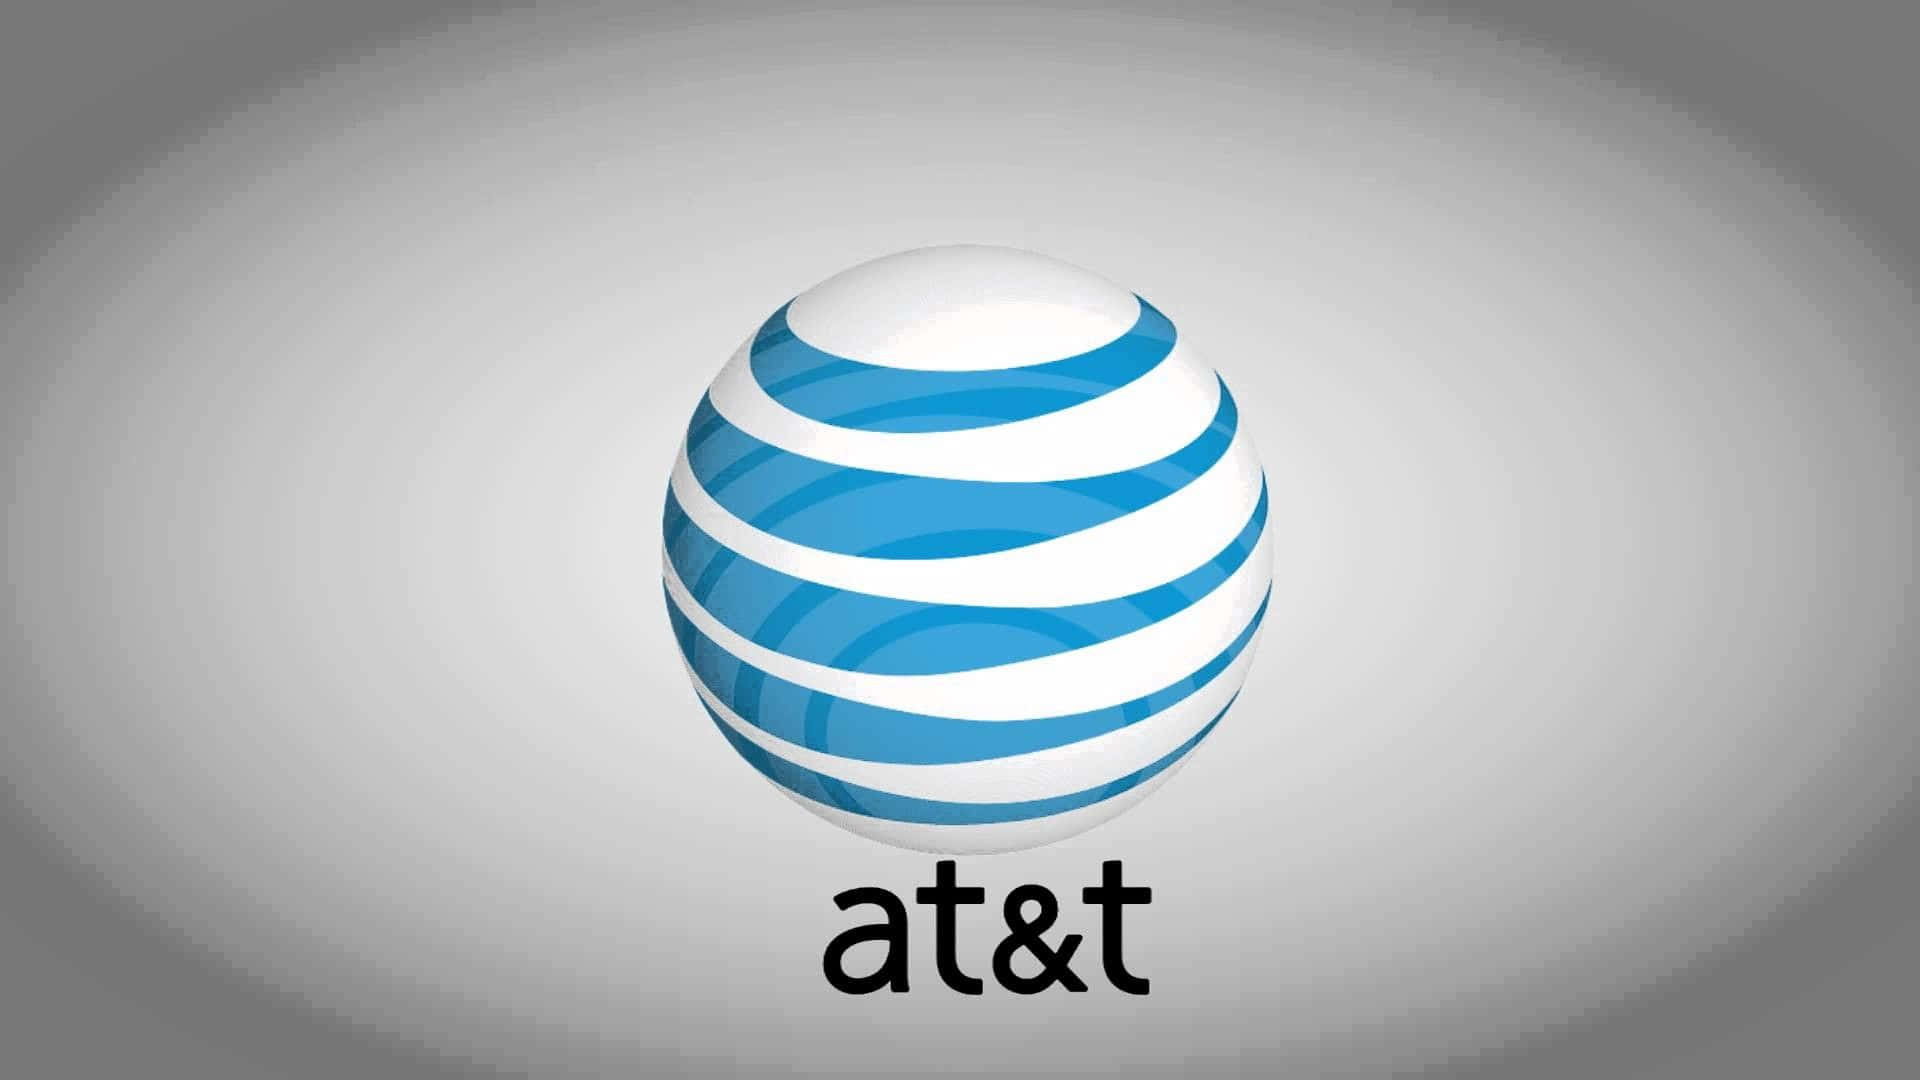 Logoet for AT&T på en grå baggrund Wallpaper